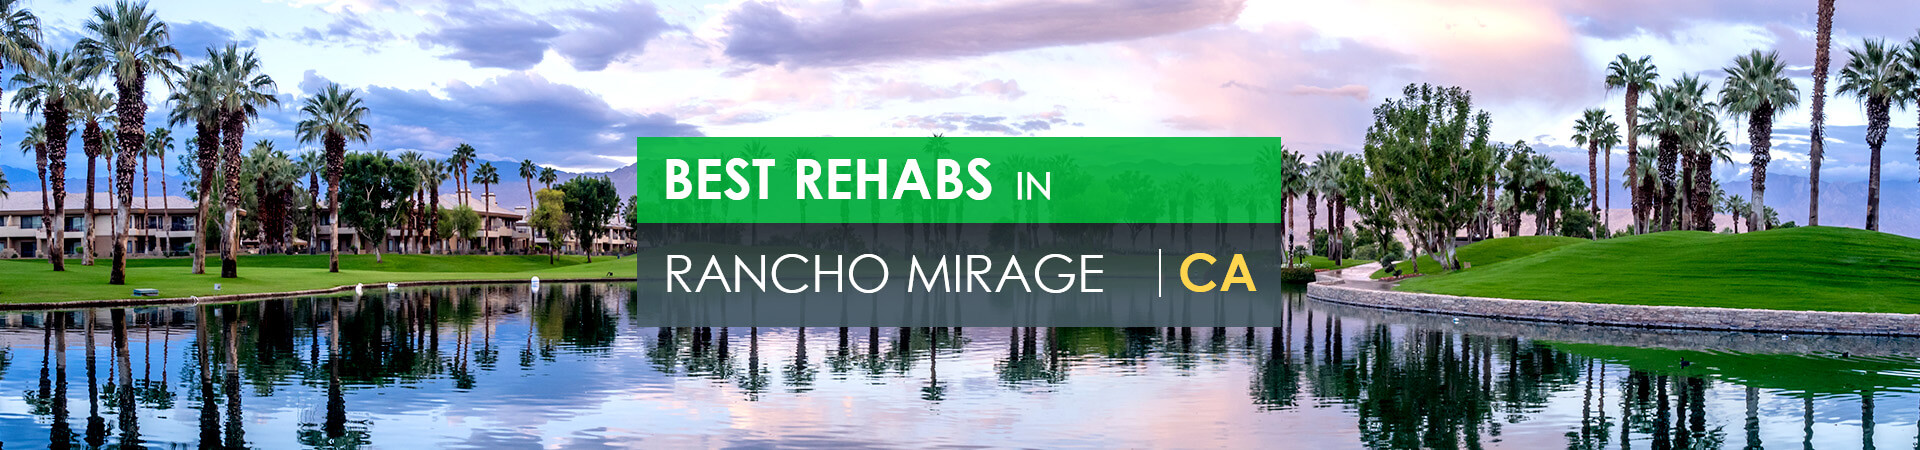 Best rehabs in Rancho Mirage, CA